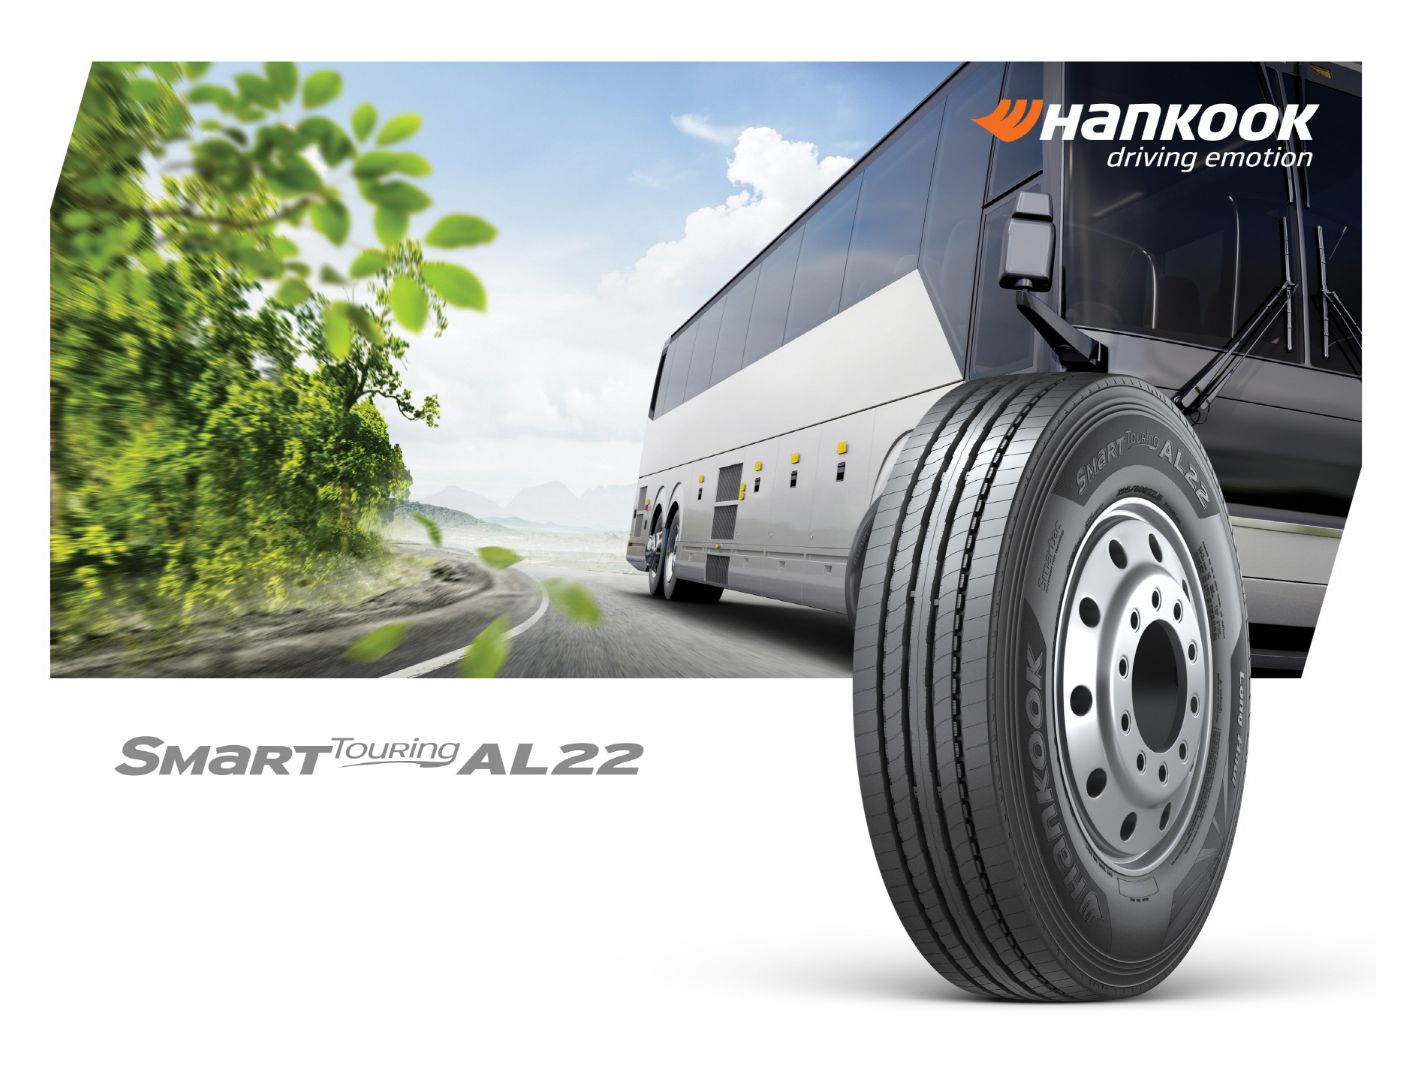 Le nouveau pneu Hankook Tire pour autobus et autocars, le Smart Touring AL22, est désormais disponible dans le monde entier